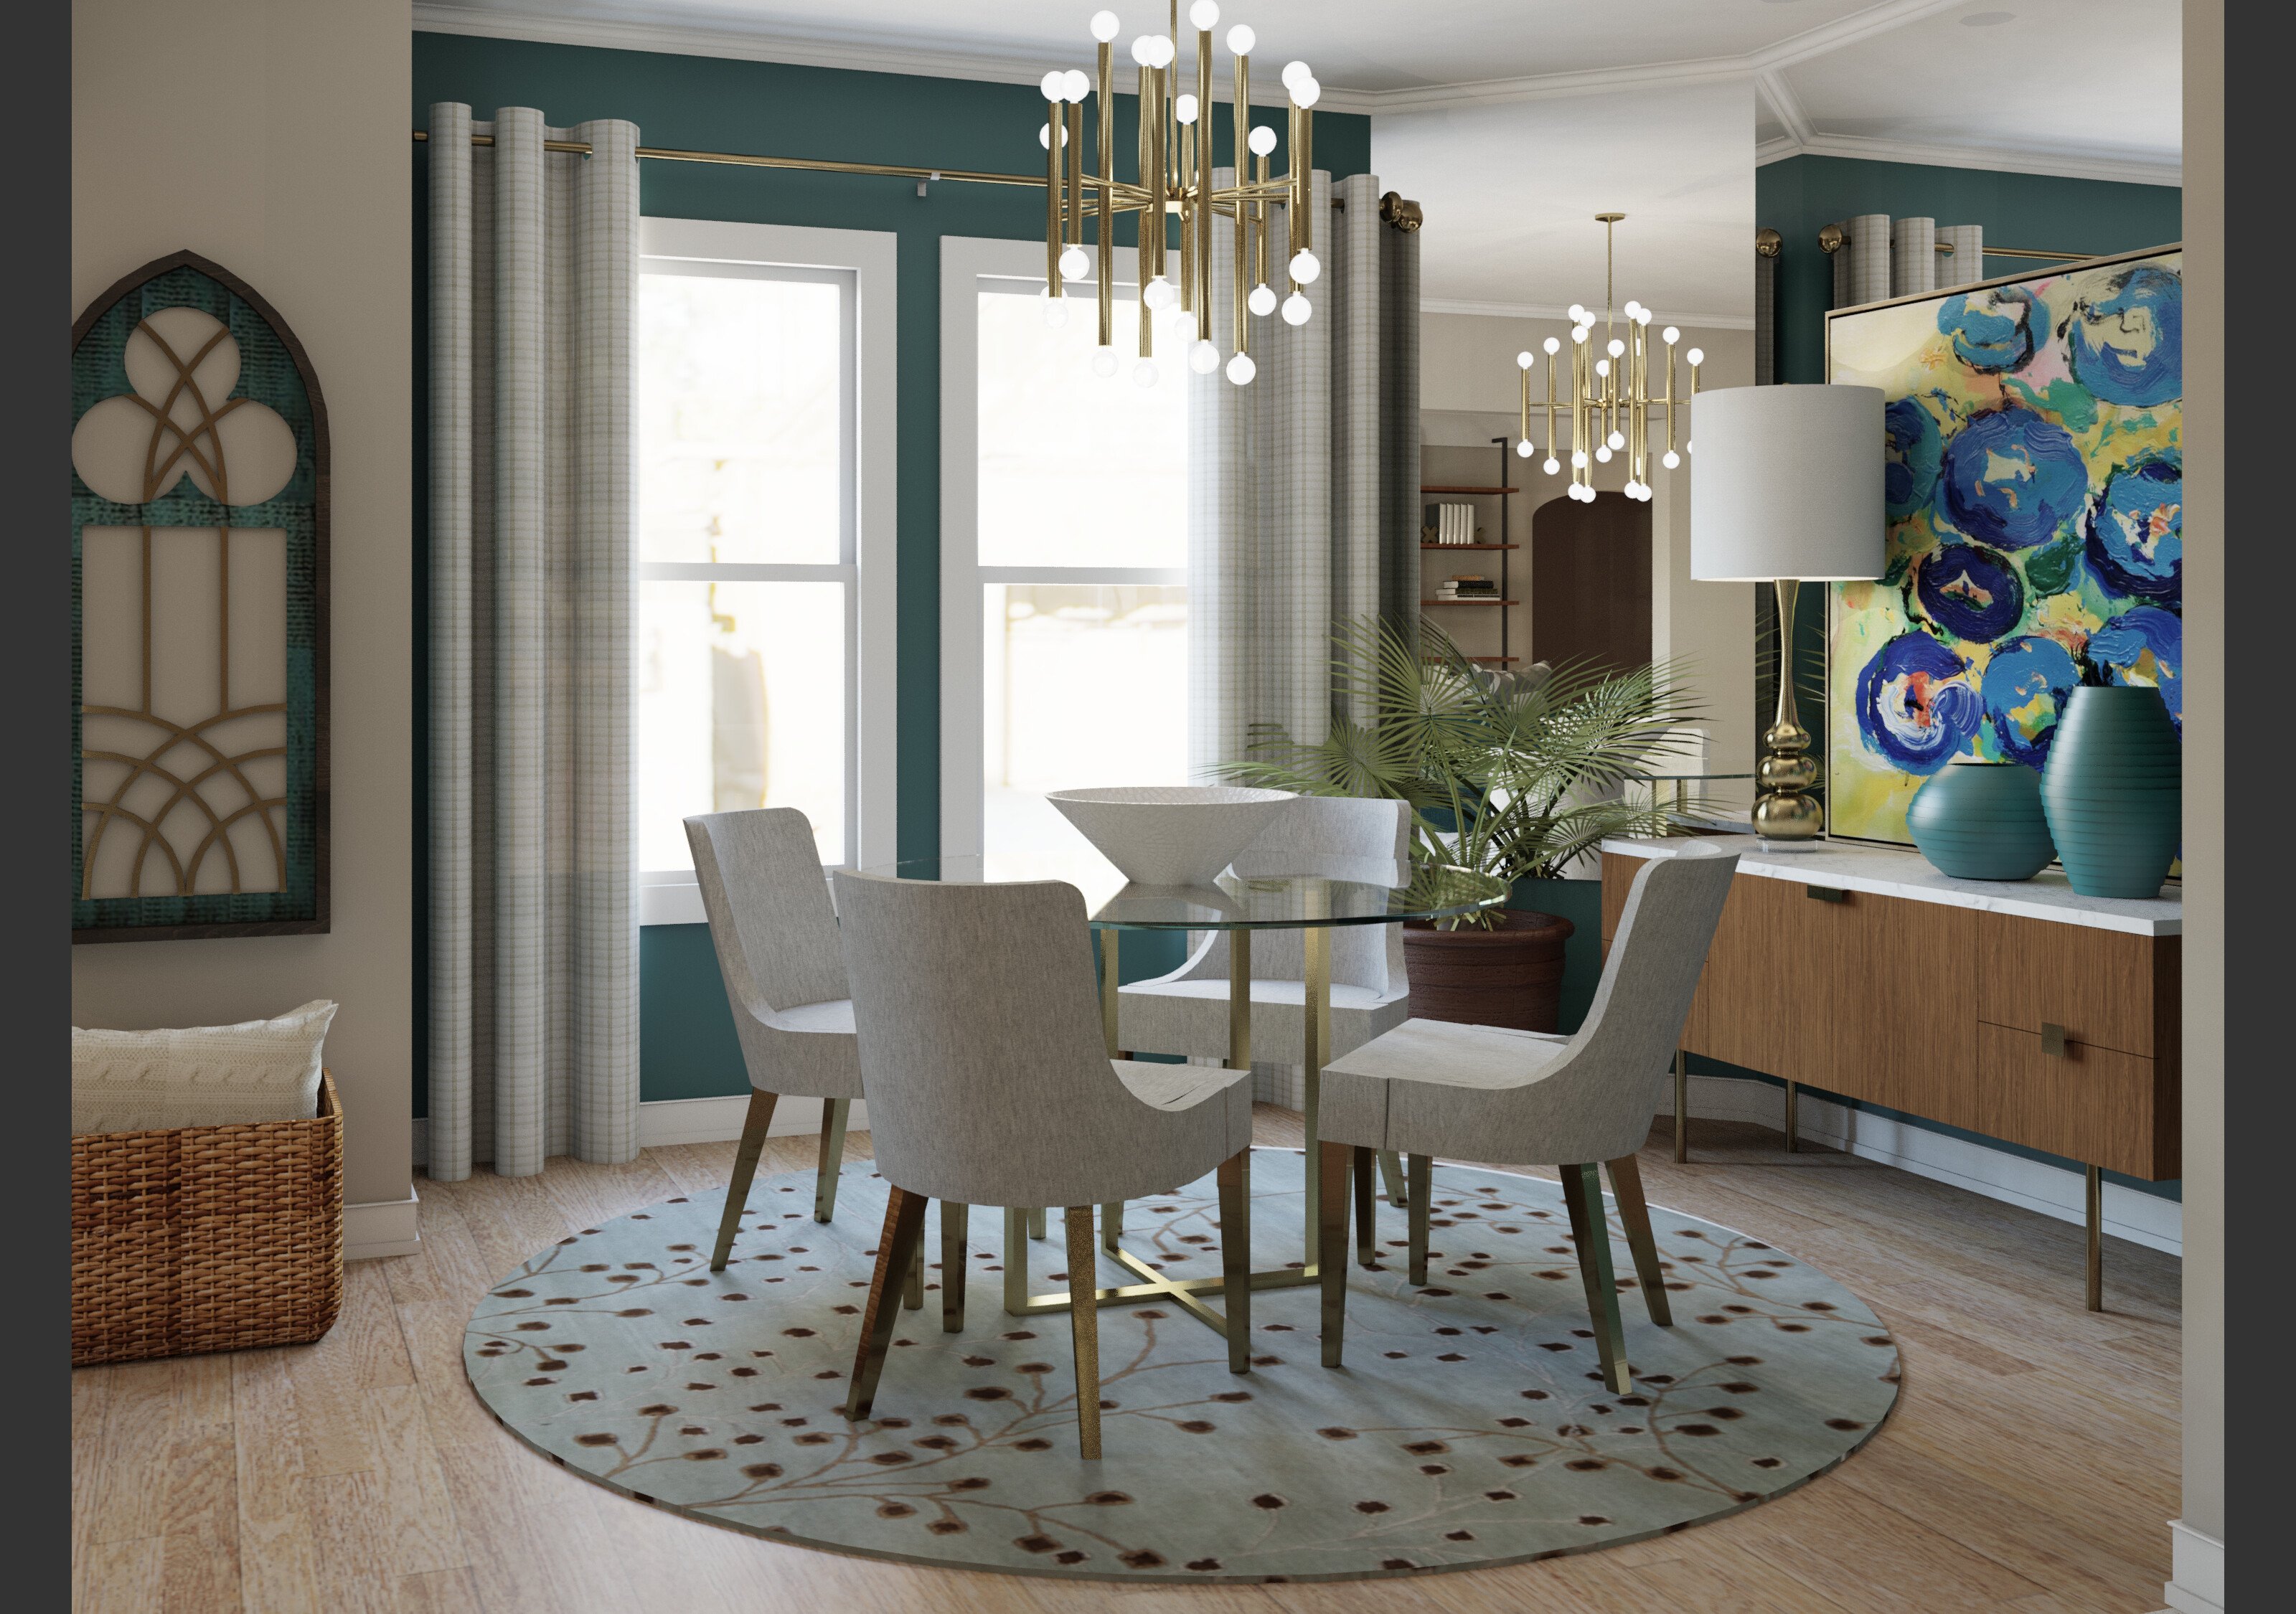 Online Living Dining Room Design interior design help 4